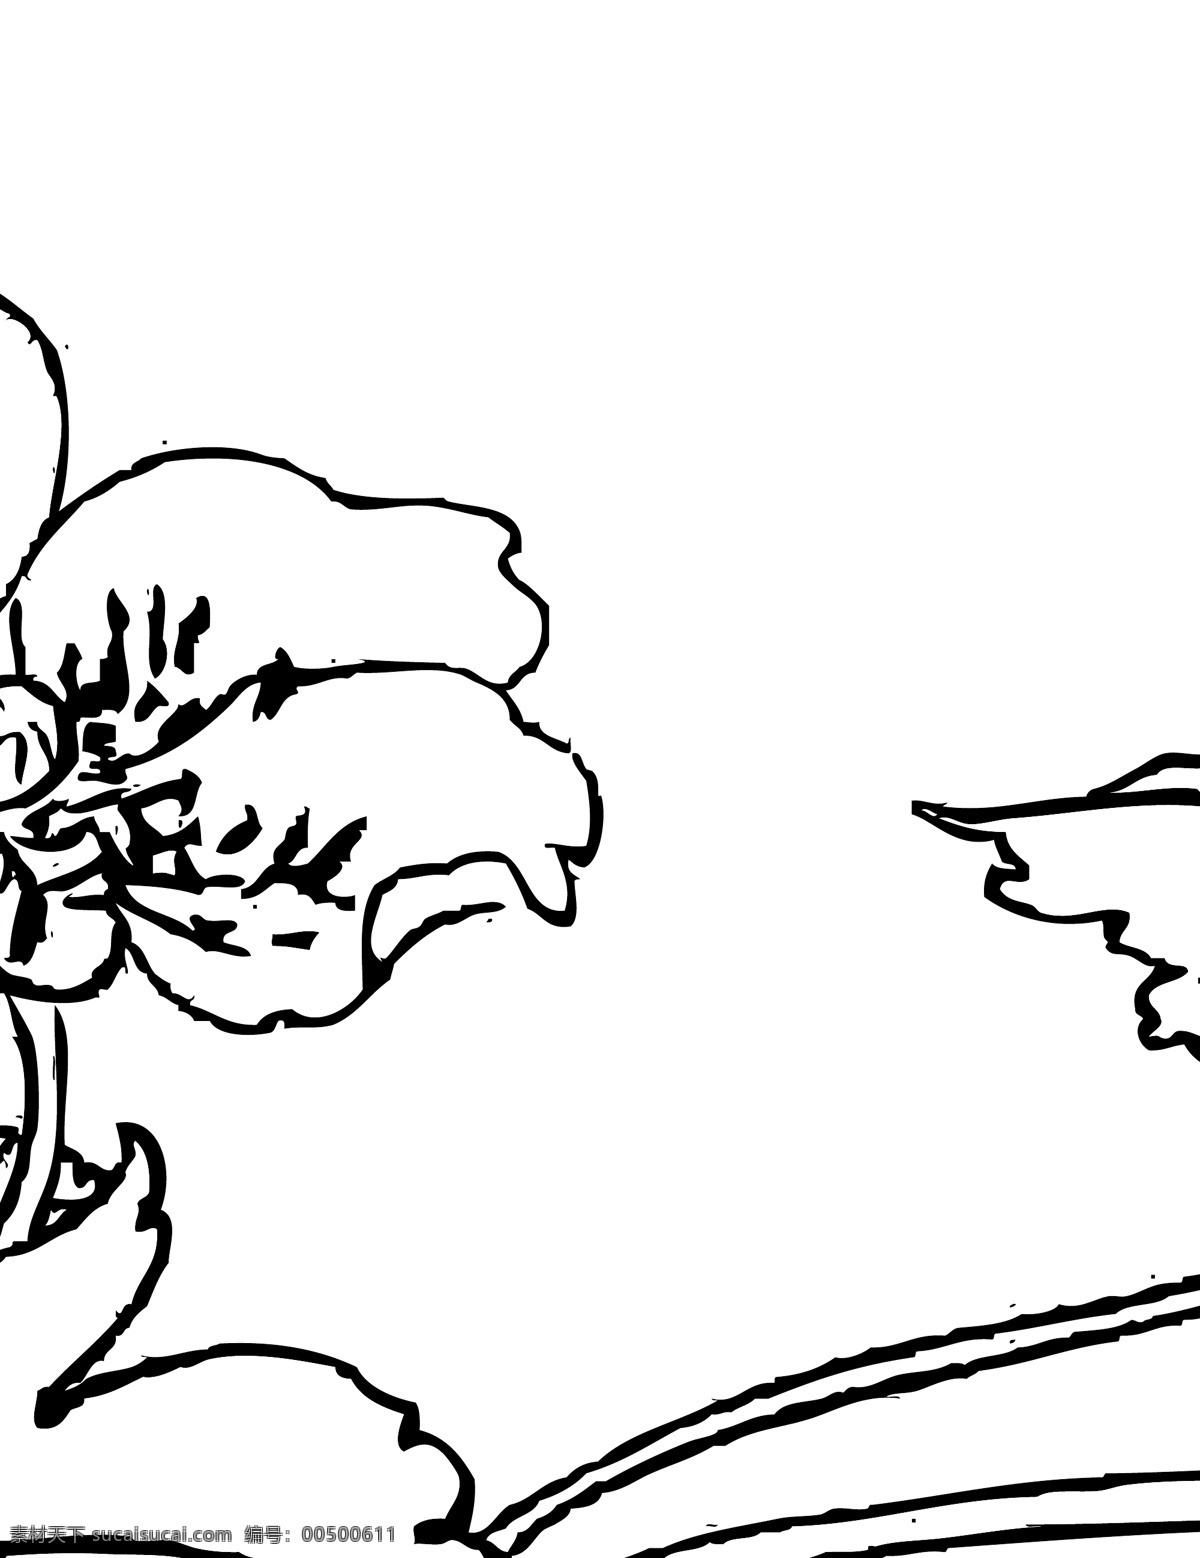 白描花卉 植物 花卉 白描 线描 花草 生物世界 矢量